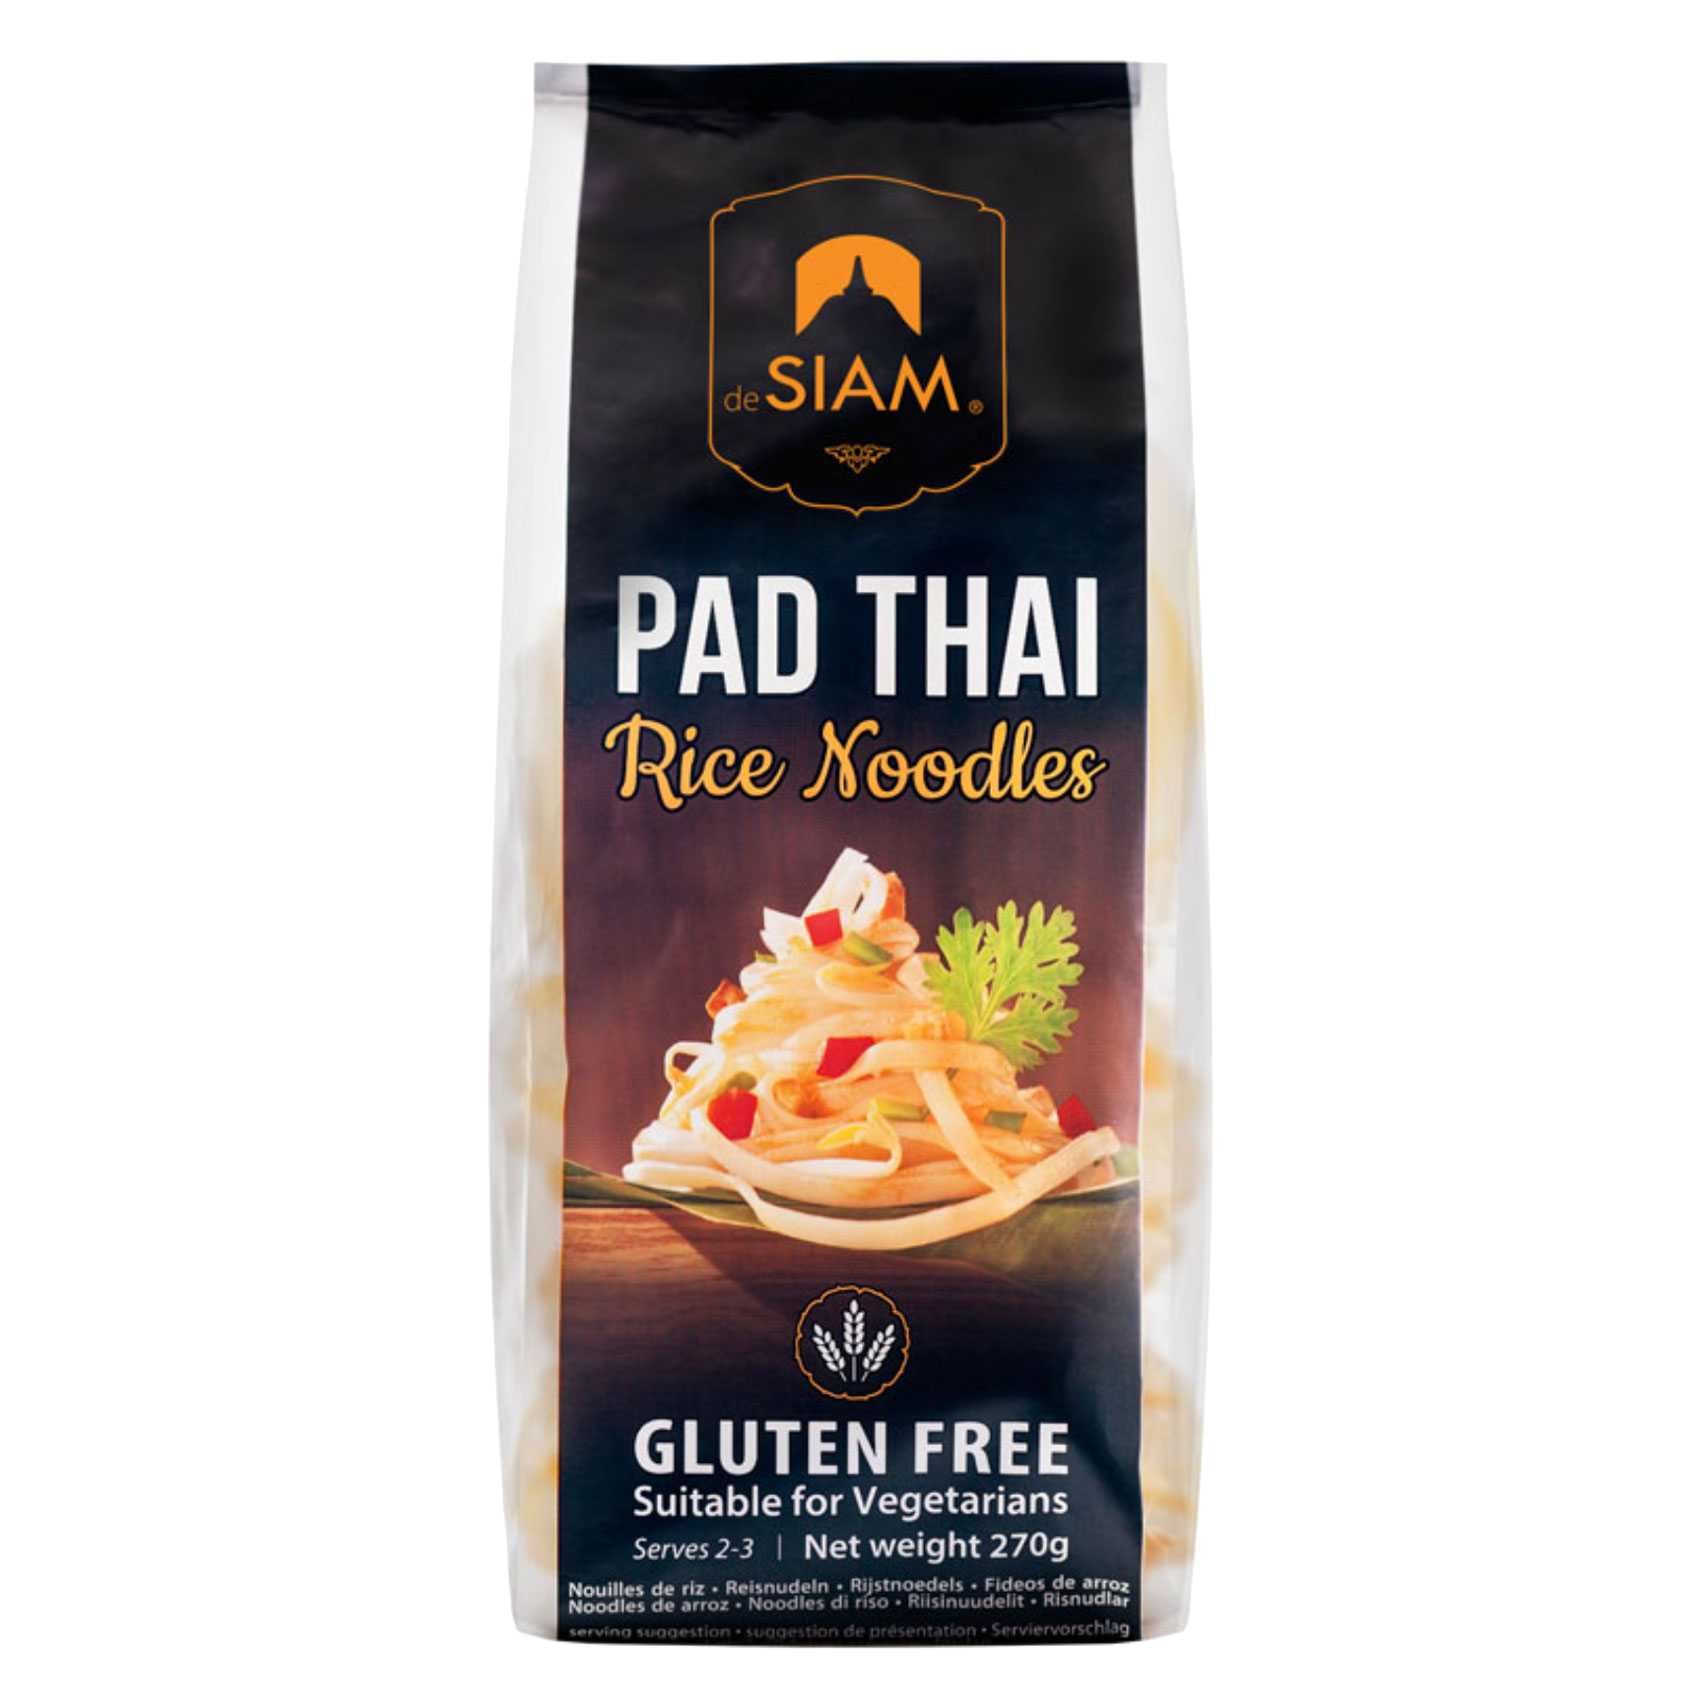 De Siam Pad Thai Rice Noodles 270g